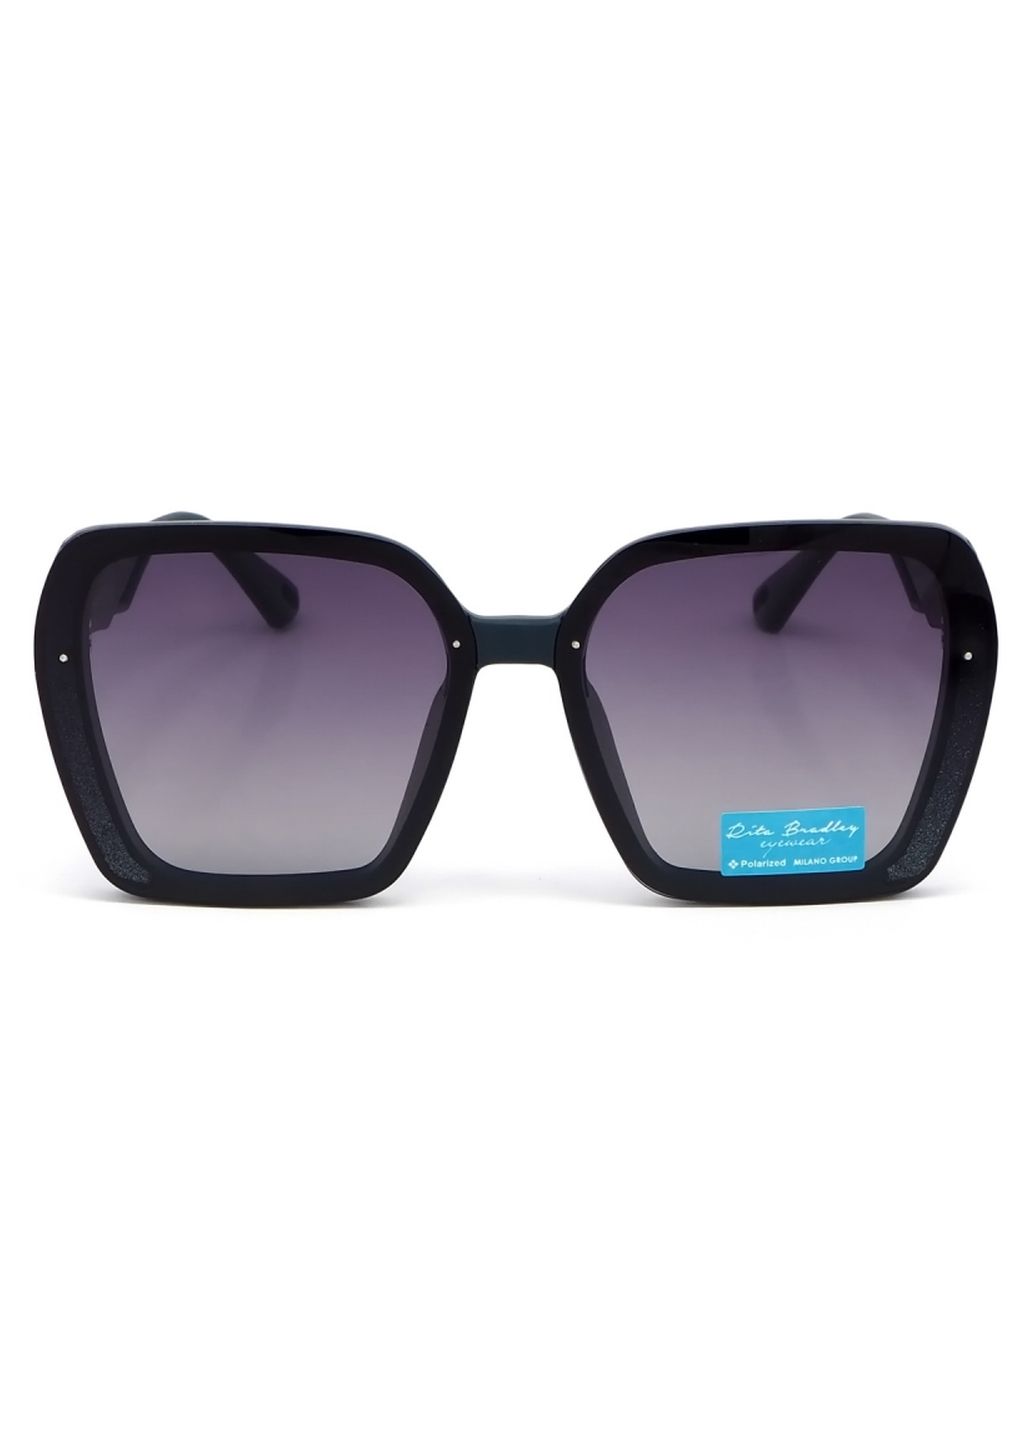 Купить Женские солнцезащитные очки Rita Bradley с поляризацией RB730 112075 в интернет-магазине